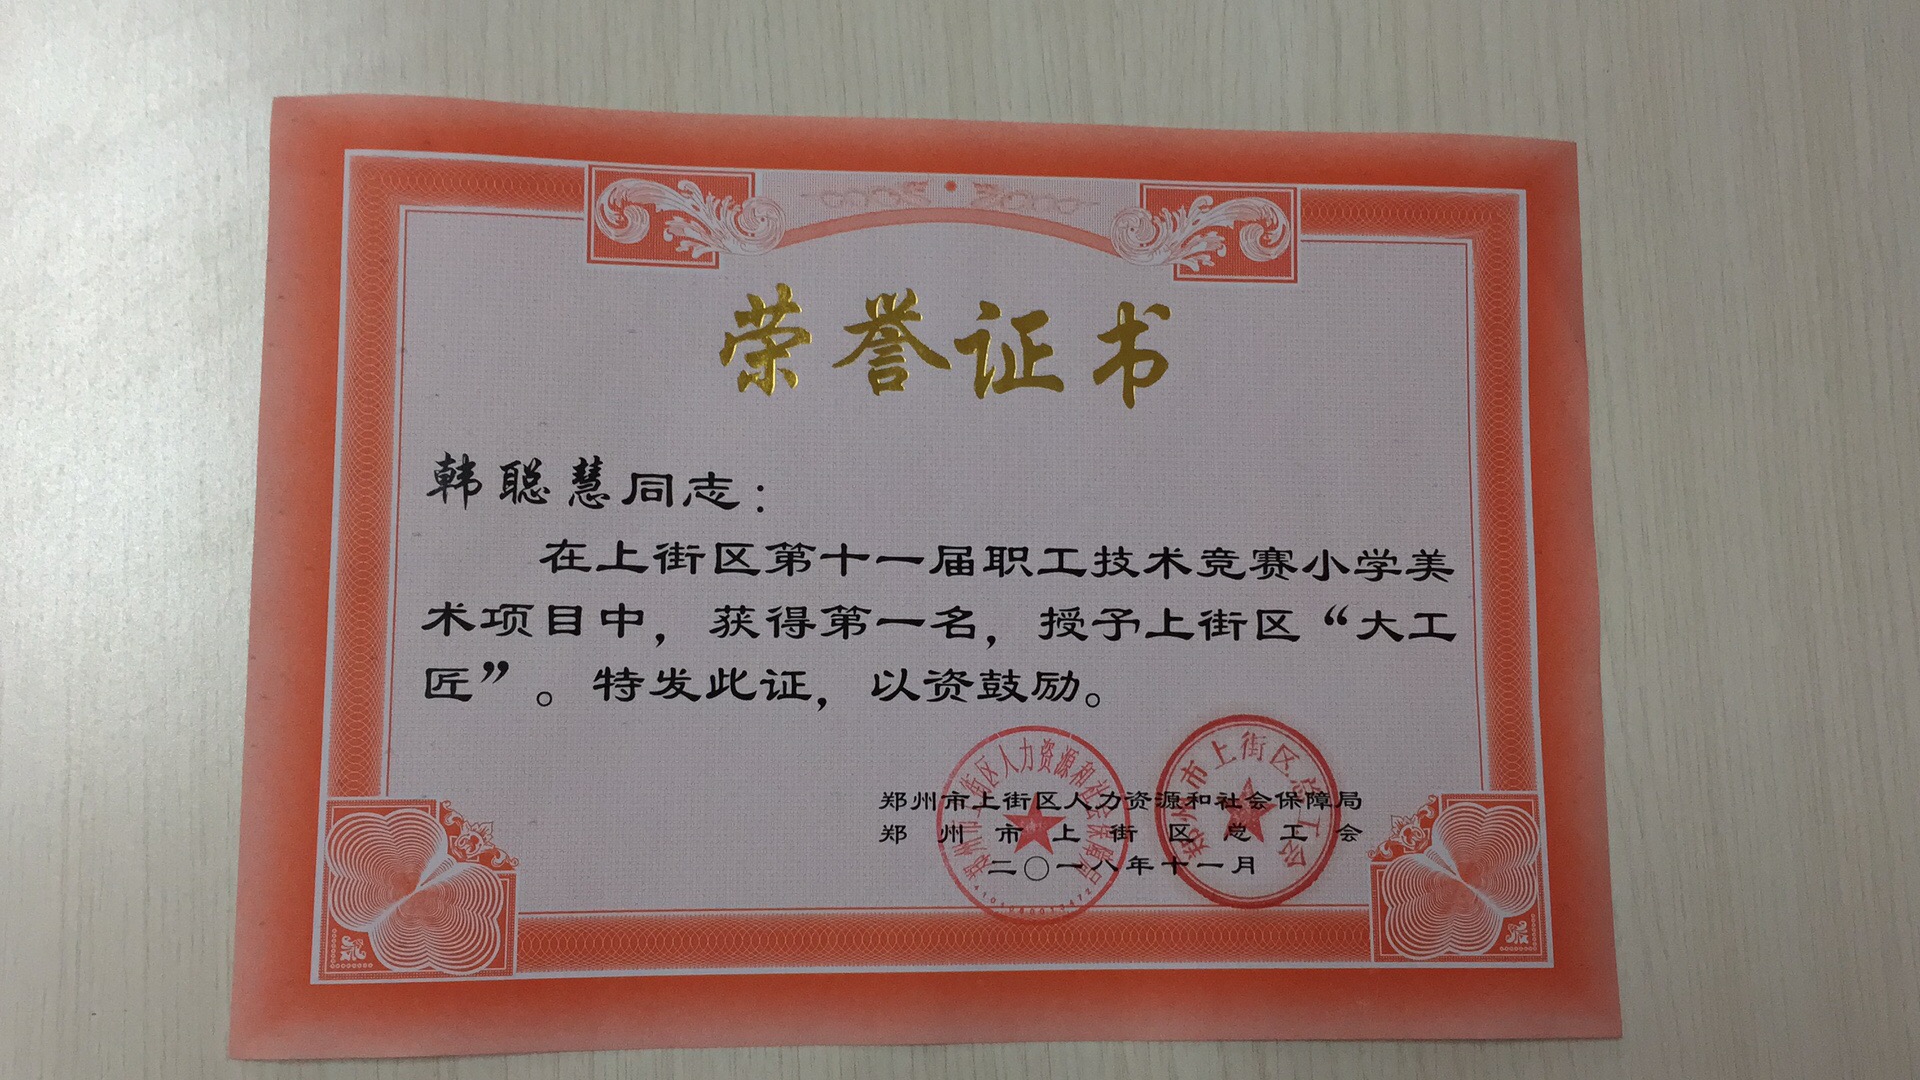 郑州上街区外国语小学教师获得区教师教学技能大赛一等奖!